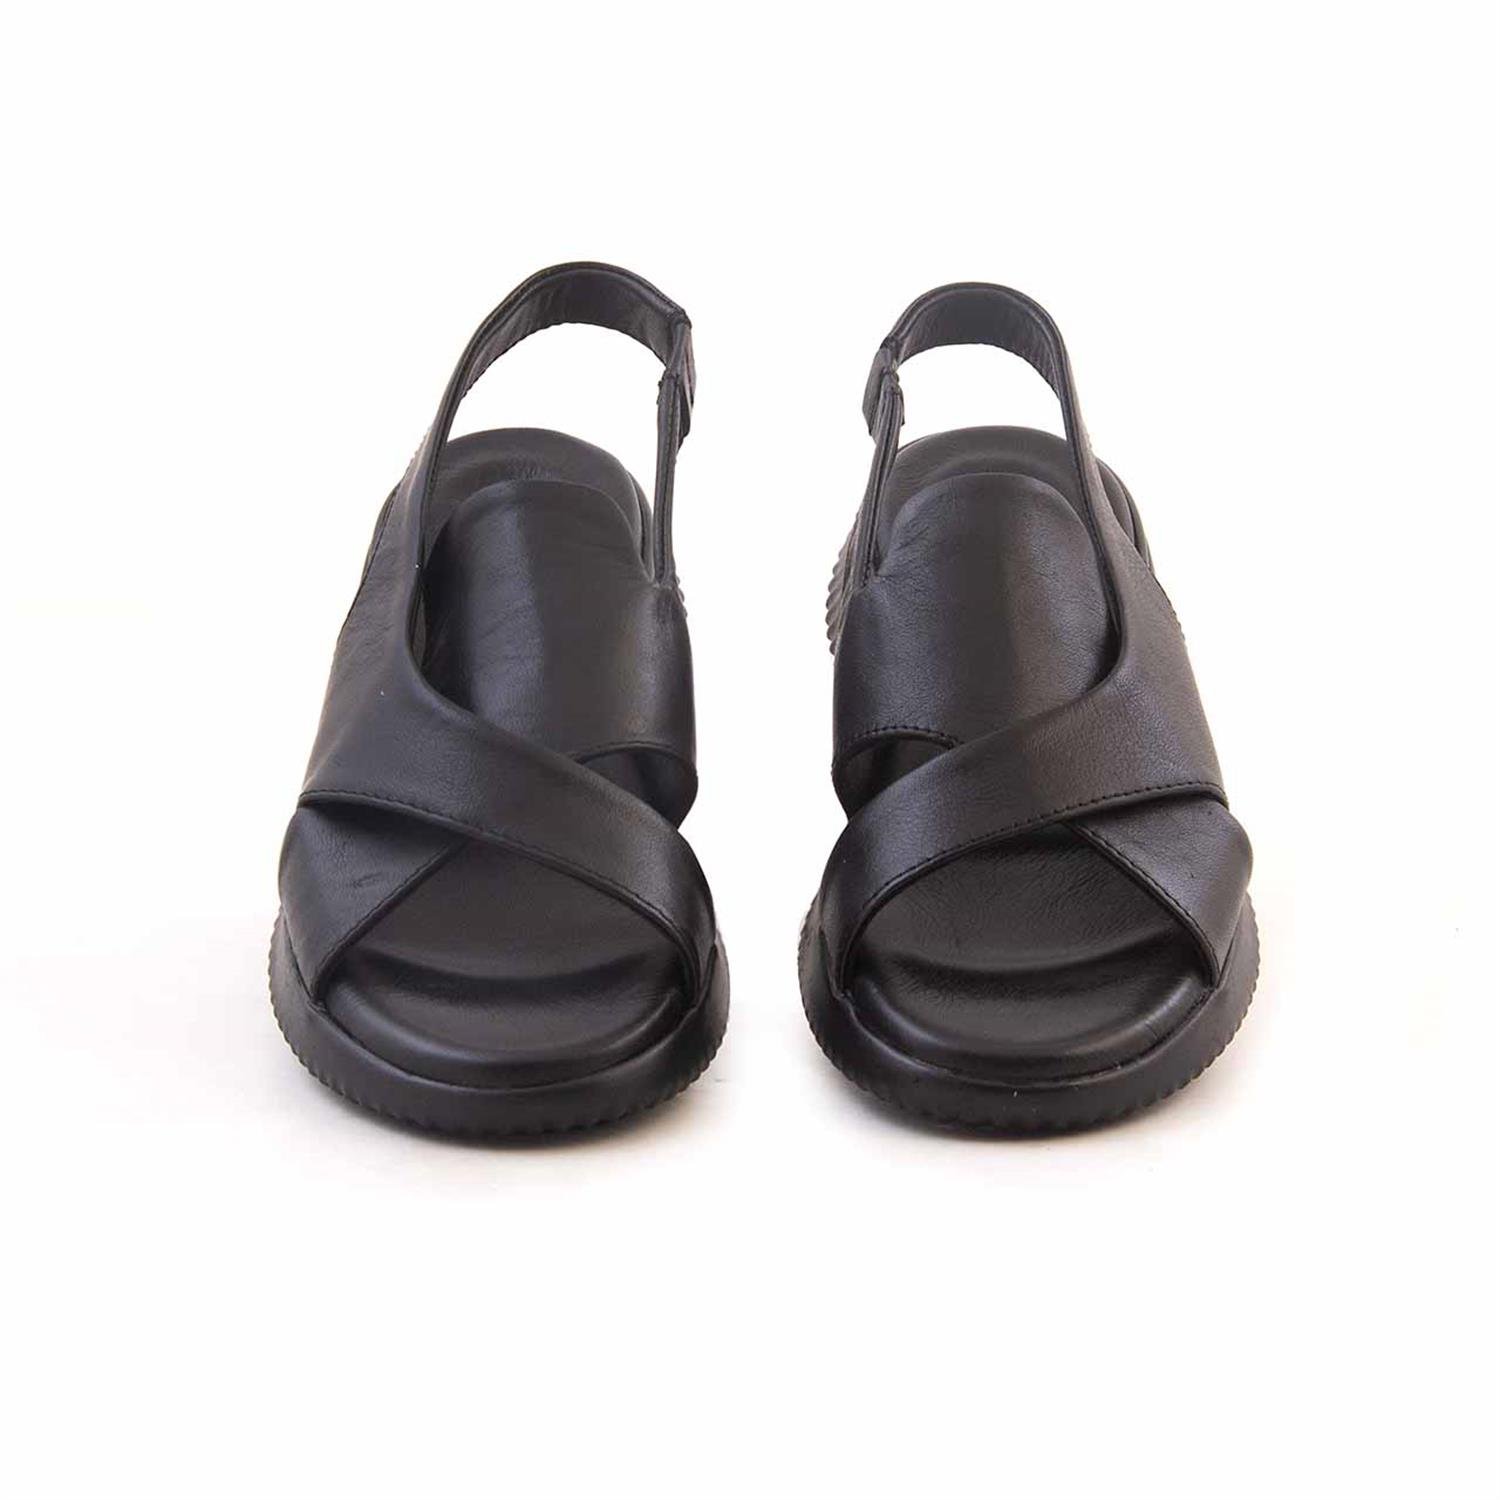 Kemal Tanca Women's Sandals 51